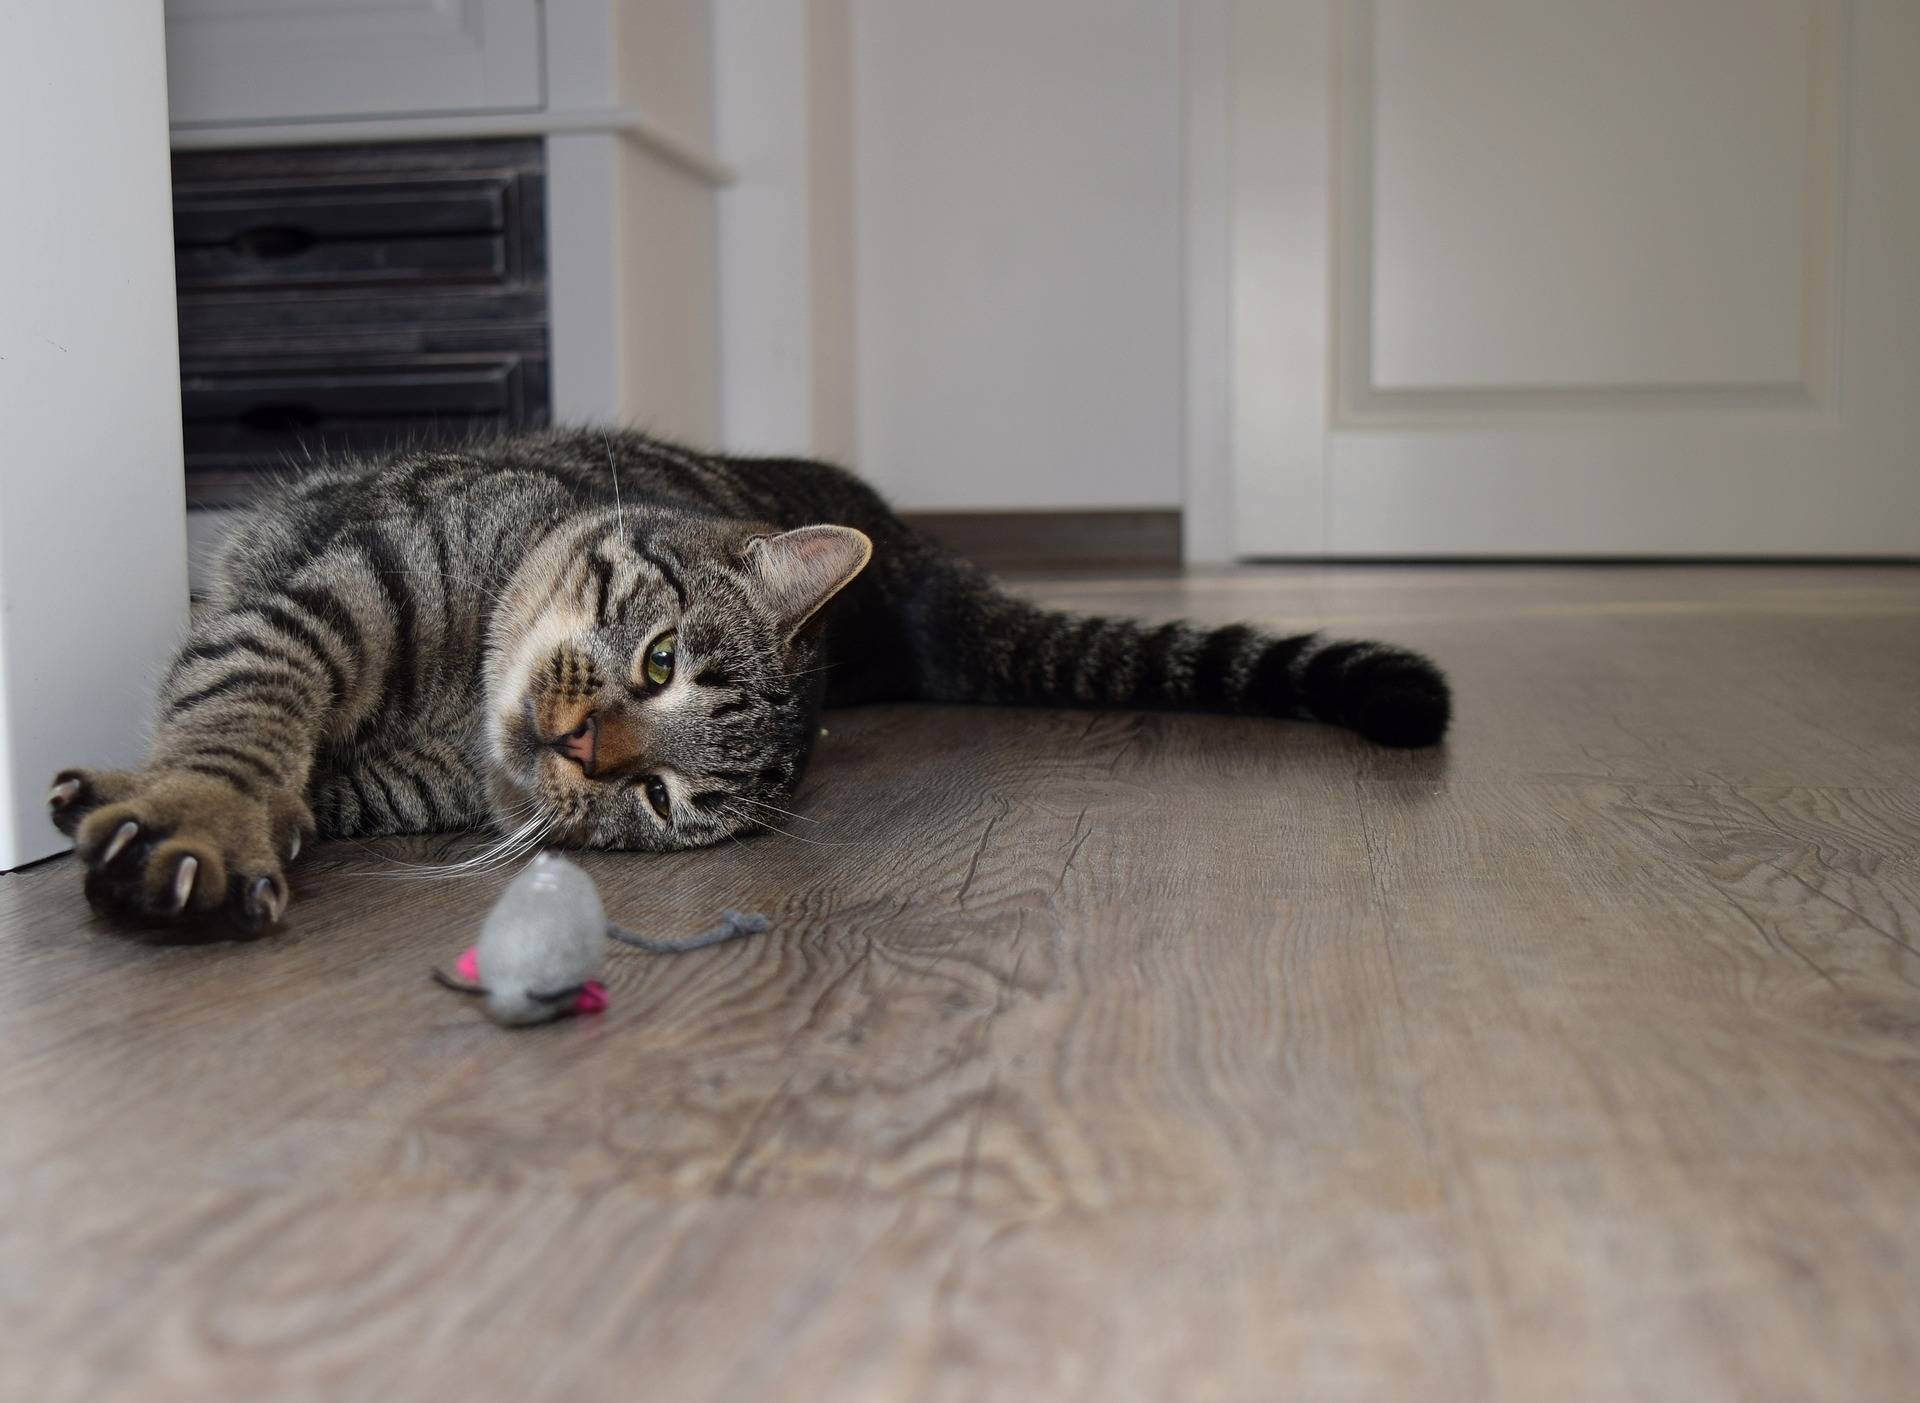 Как отучить кошку драть обои и мебель: с котом что делать если дерет, которые драли жидкие обои